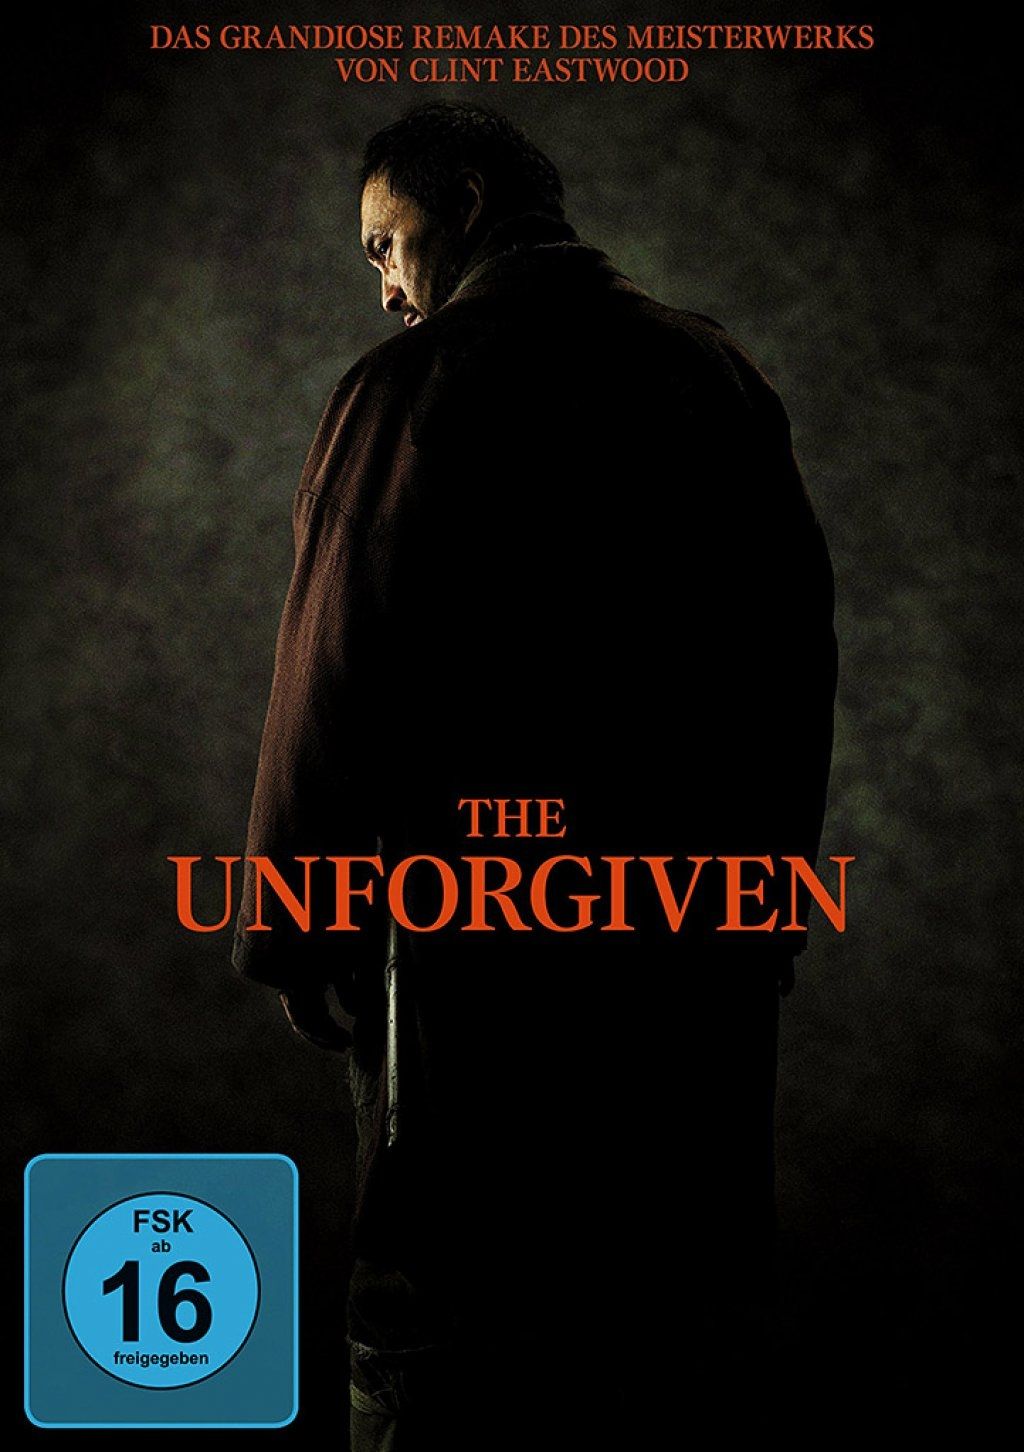 Unforgiven, The